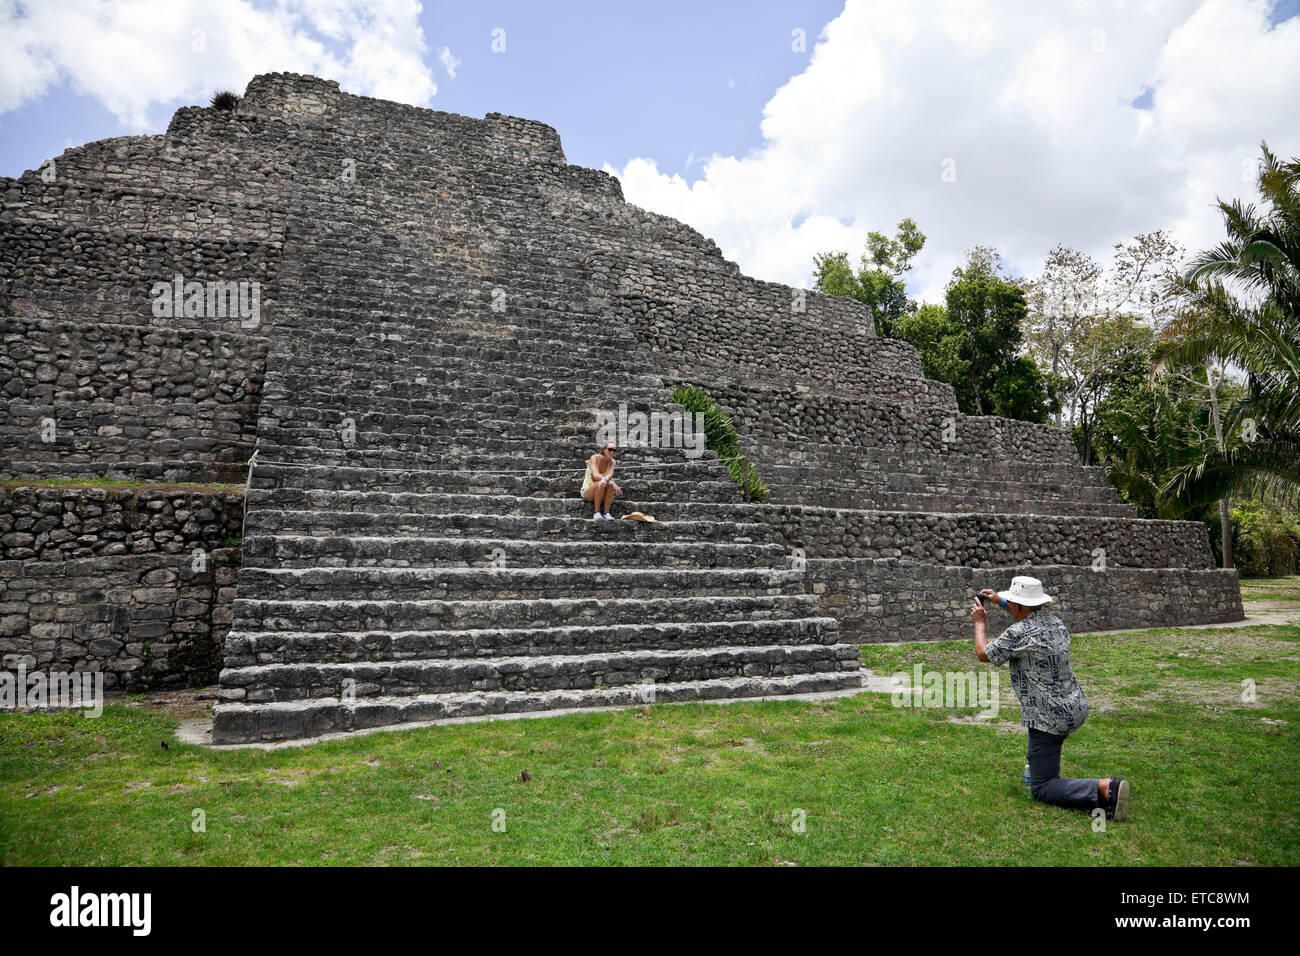 Ein beliebter Tagesausflug für Kreuzfahrt-Passagiere, Chacchoben an der mexikanischen Riviera wurde von den Maya schon 200 v. Chr. besiedelt. Stockfoto